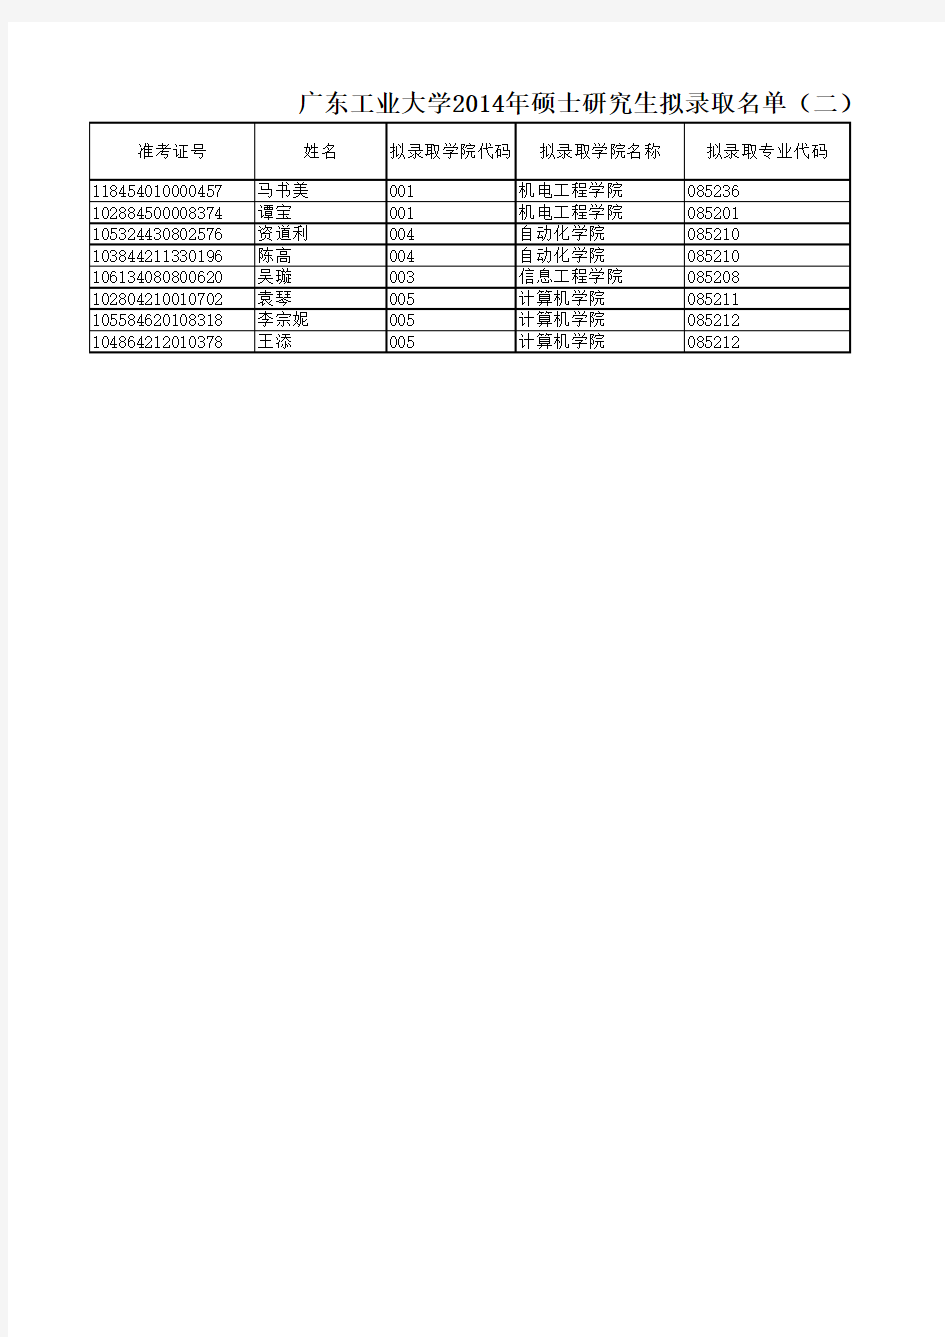 《广东工业大学2014全日制硕士研究生拟录取名单(二)》